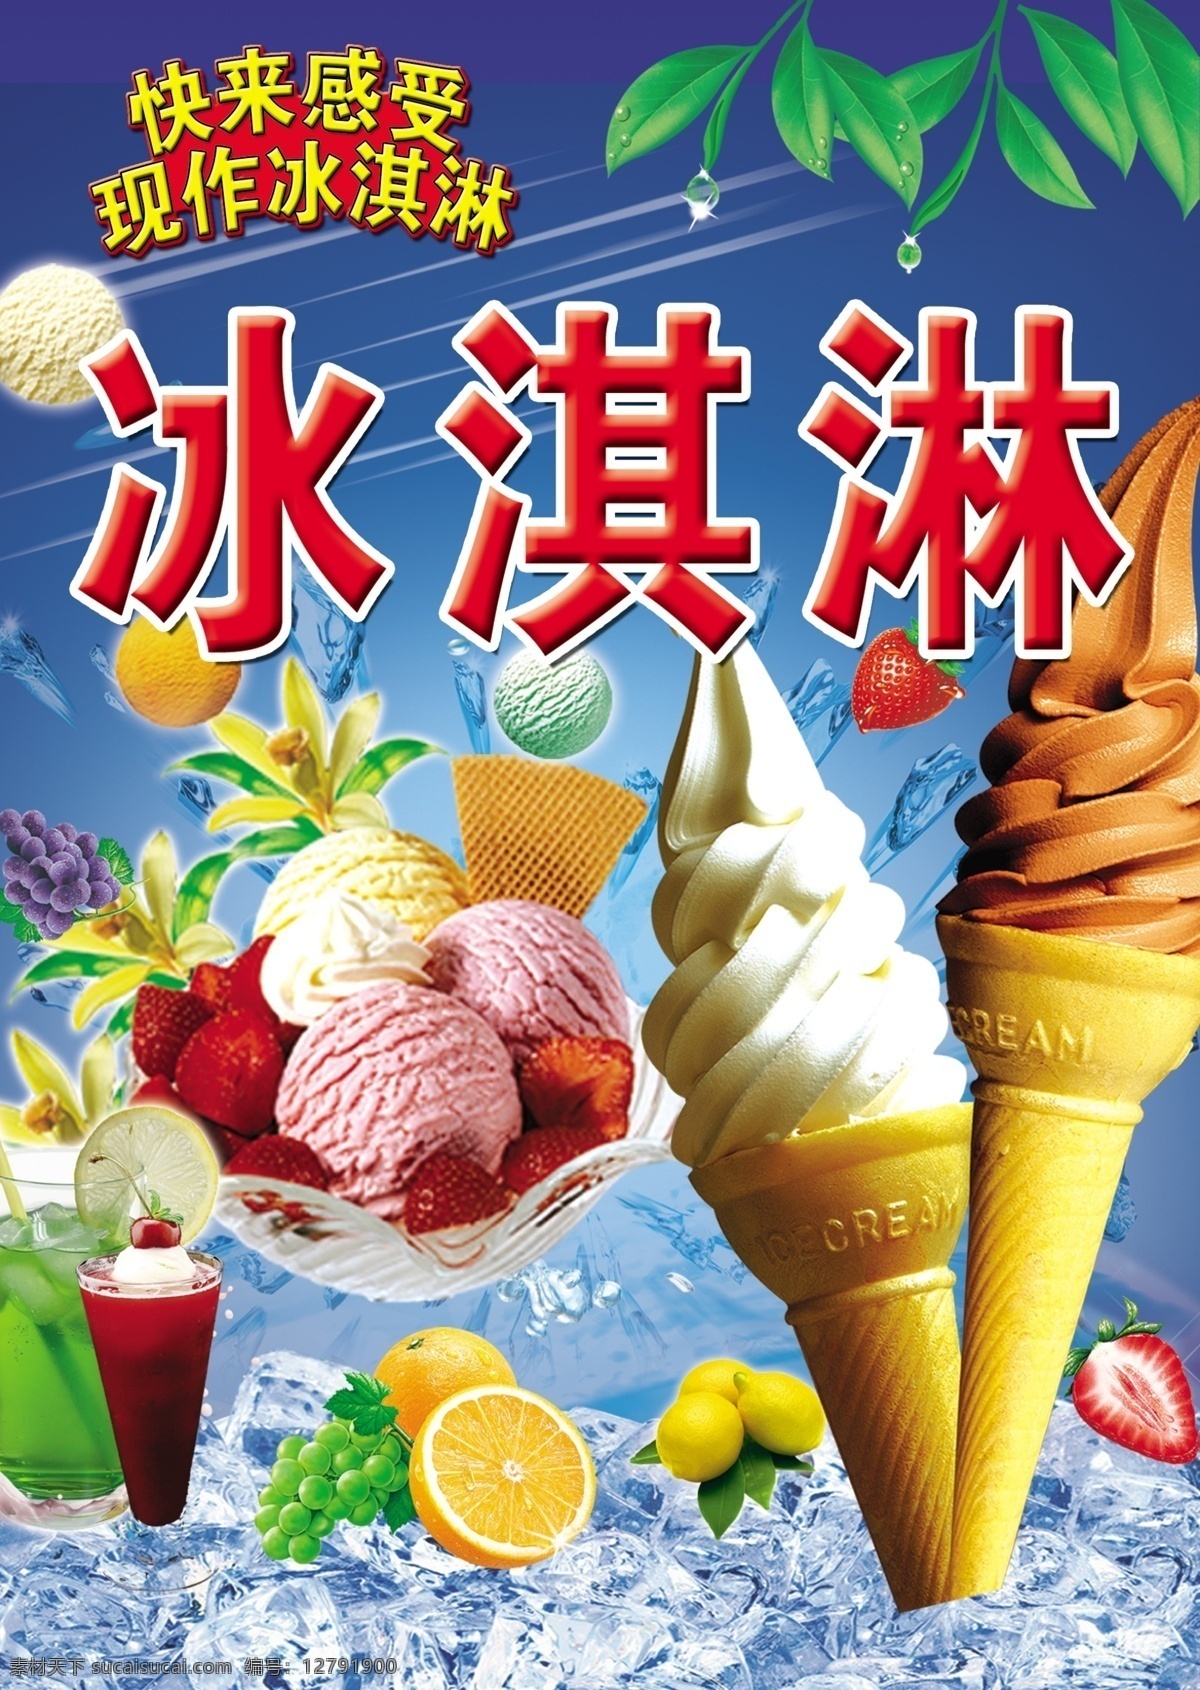 现作冰淇淋 冰淇淋 现作 雪糕 冰淇淋海报 水果冰淇淋 冰淇淋广告 冰淇淋高清图 分层